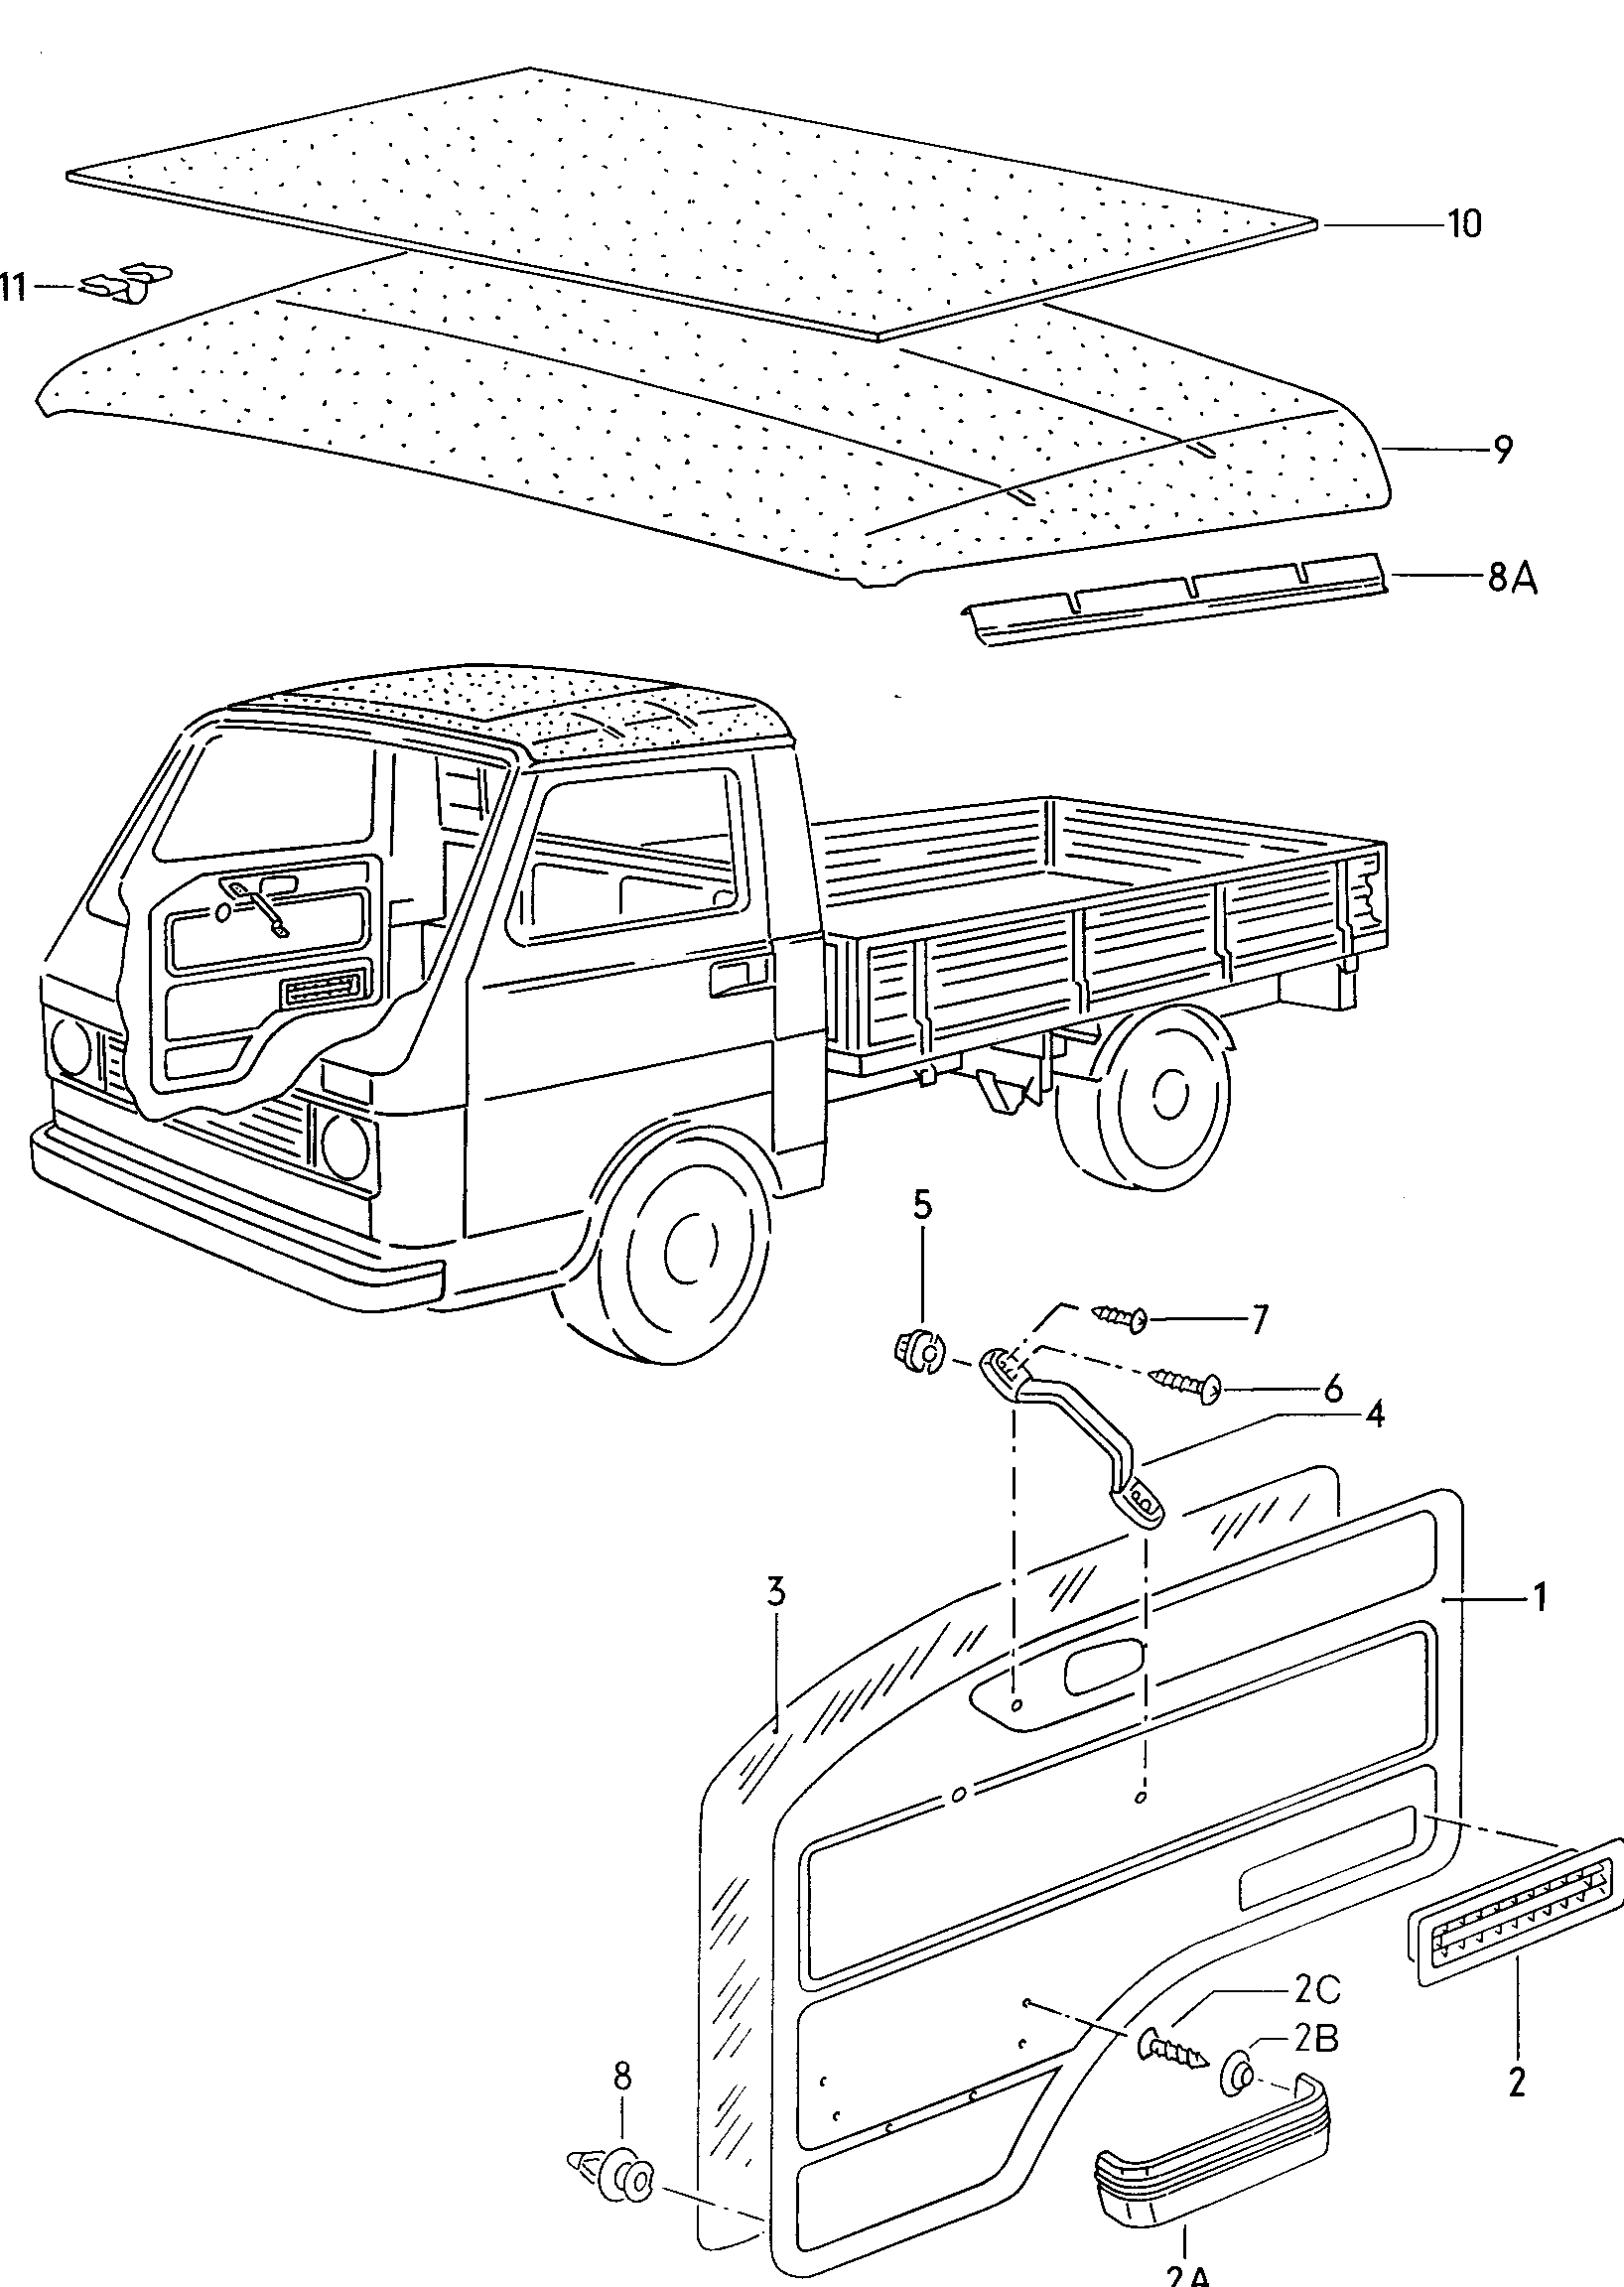 roof trim pick-up - LT, LT 4x4 - lt